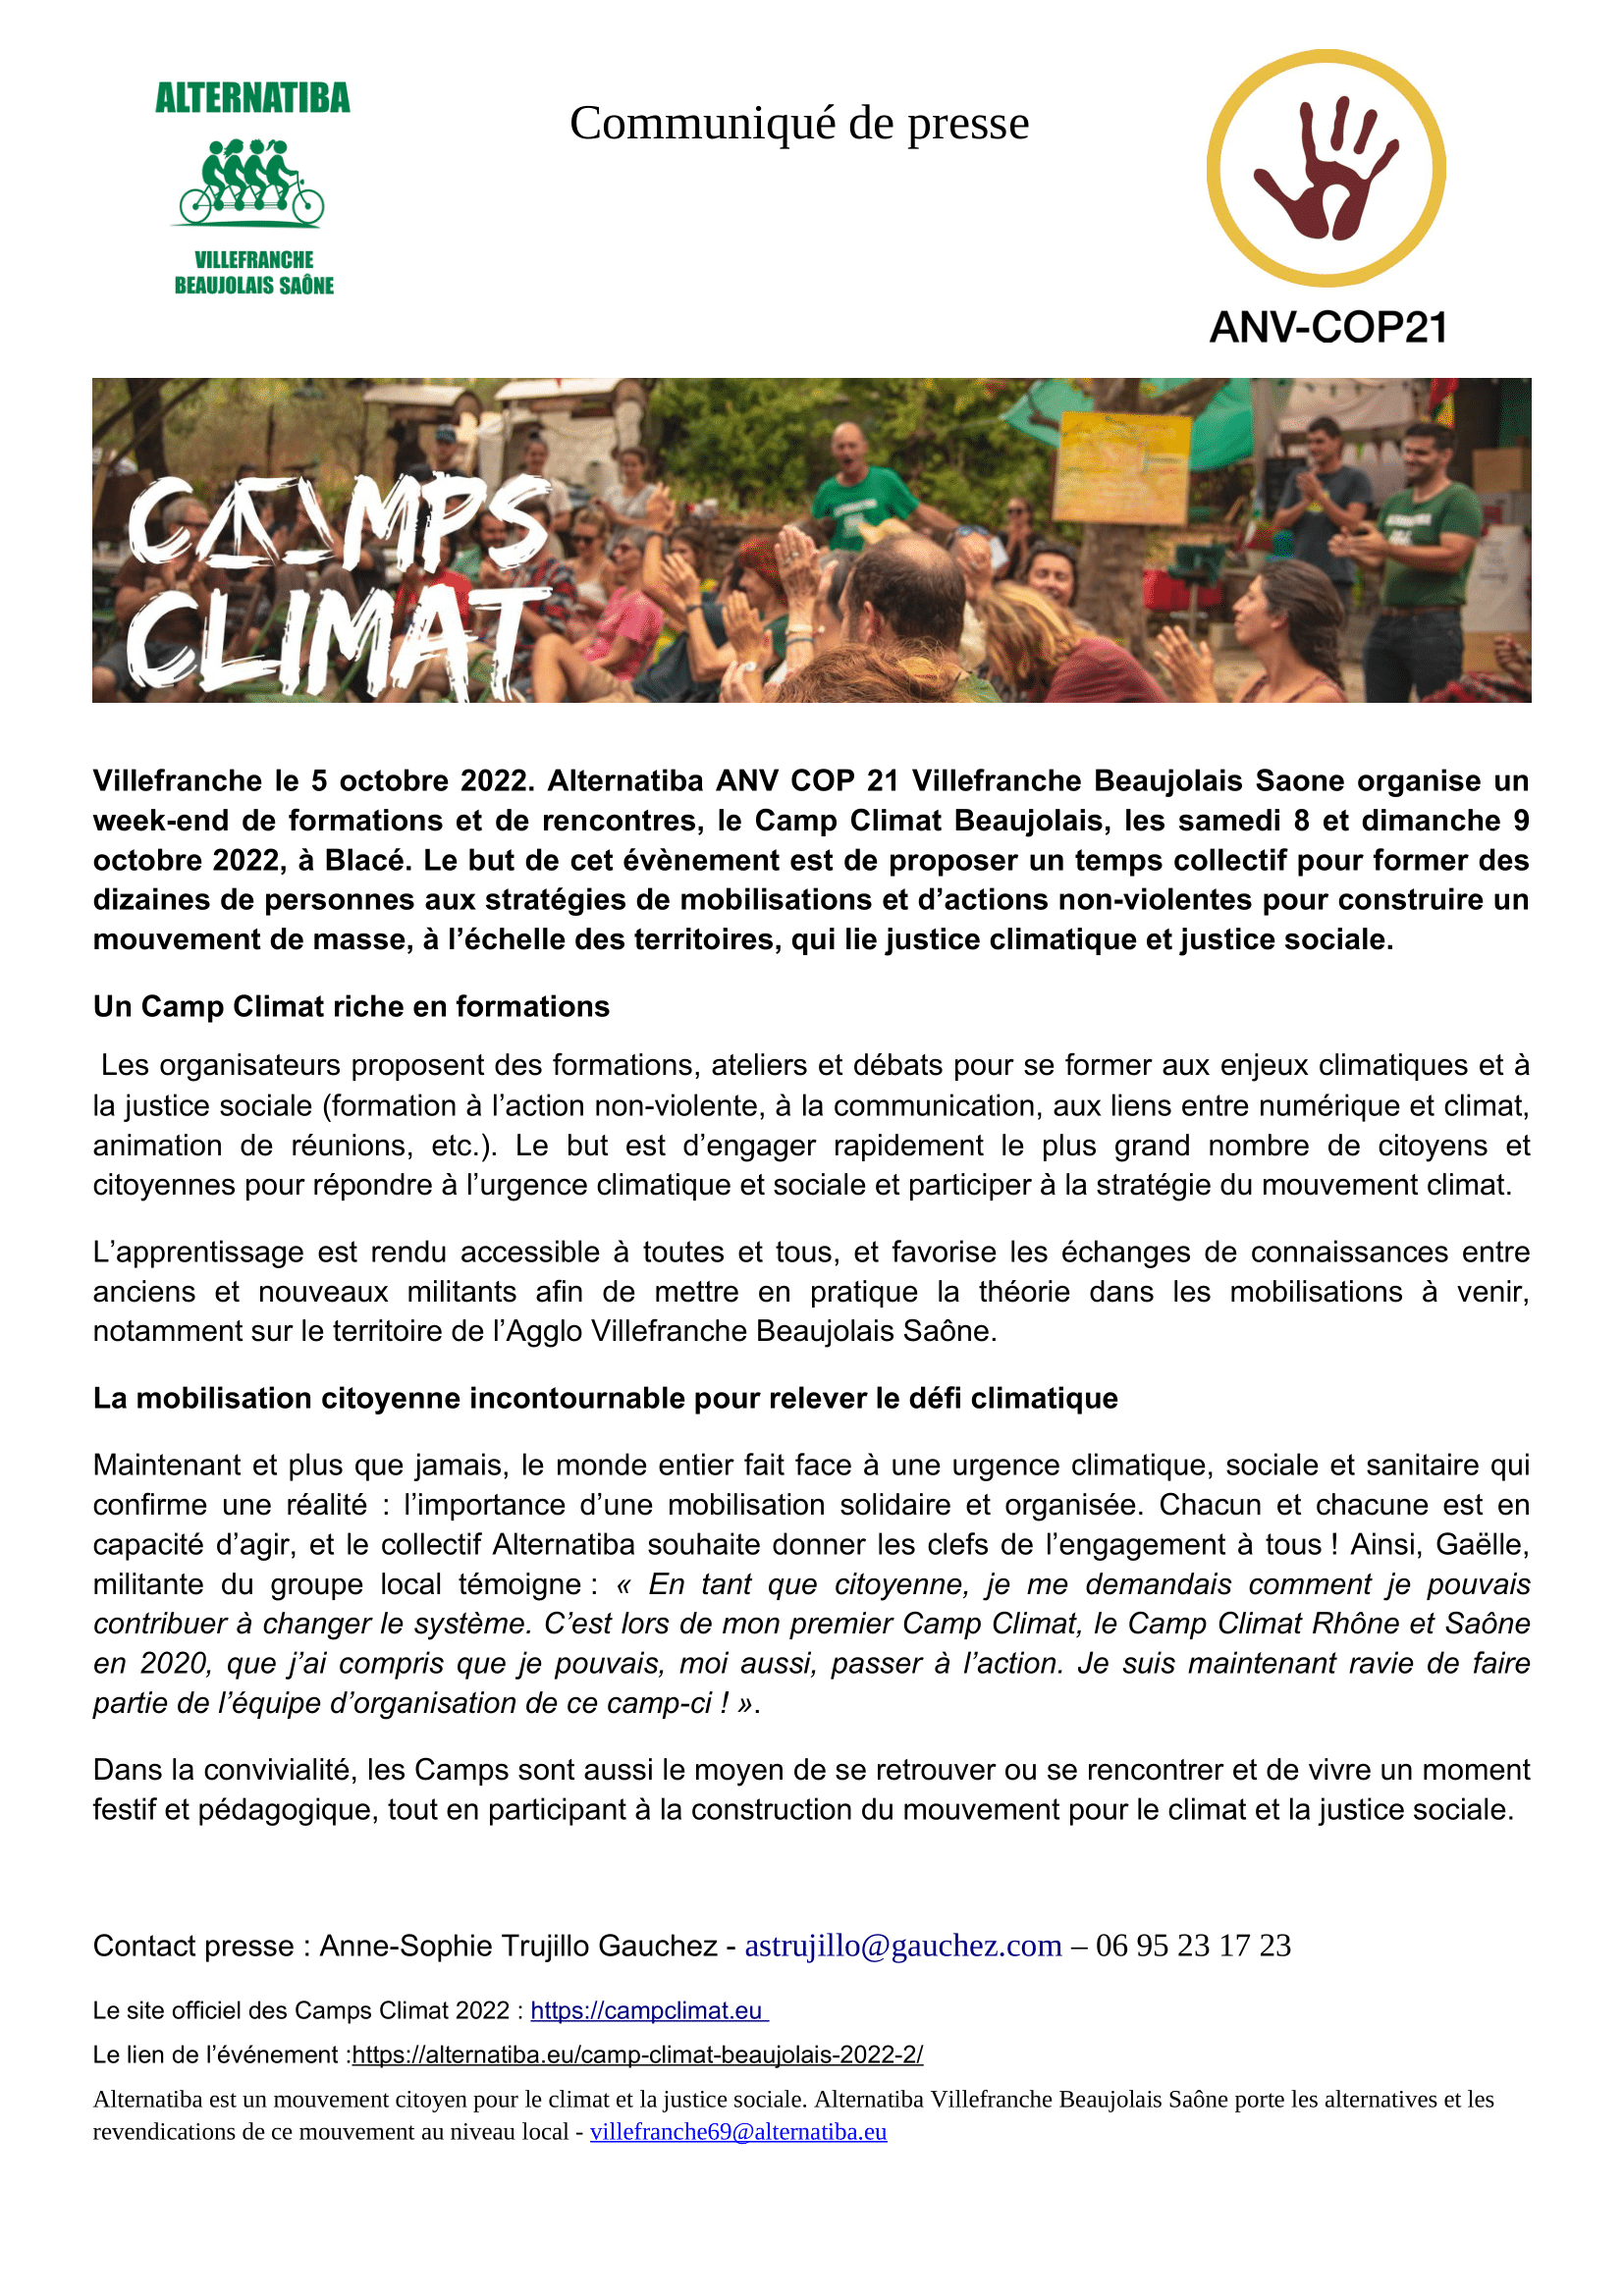 Camp climat Beaujolais Communiqué de presse : Image à la une